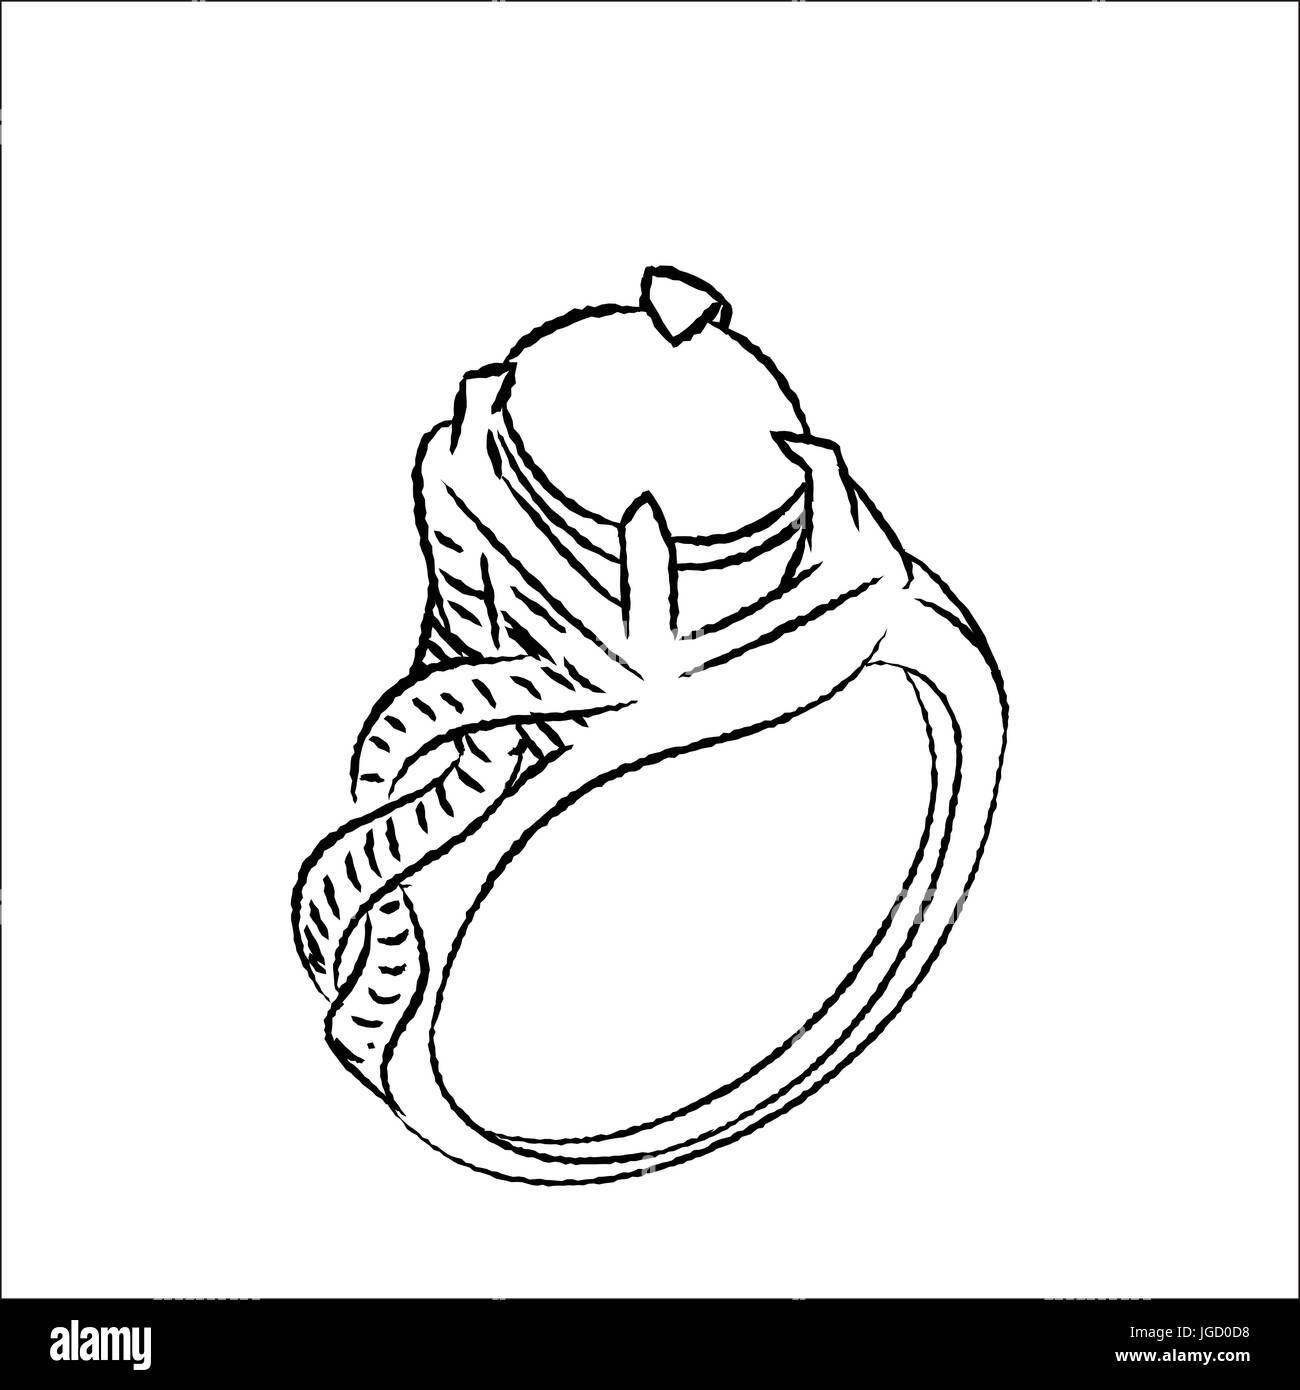 Hand gezeichnete Skizze der Ring isoliert, schwarz / weiß-Cartoon-Vektor-Illustration für Coloring Book - Linie gezeichnet Vektor Stock Vektor